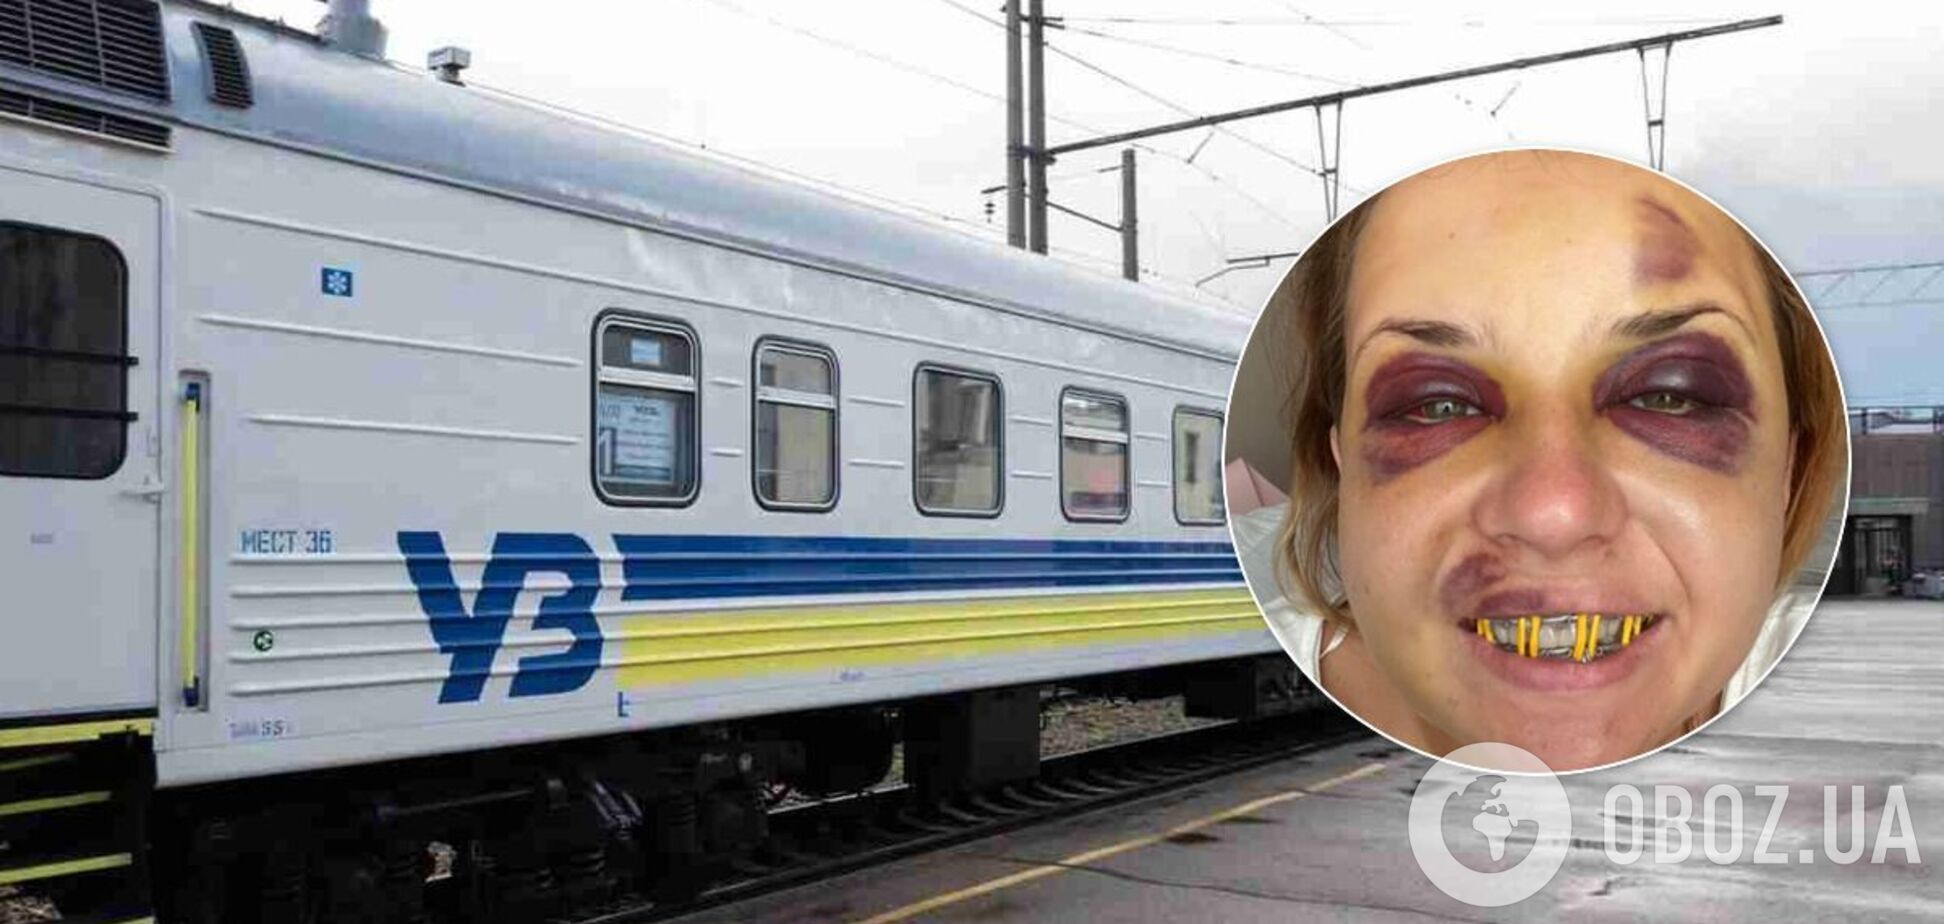 Жертва нападения в поезде УЗ рассказала о сложной операции: боль такая, словно зубы вырвали